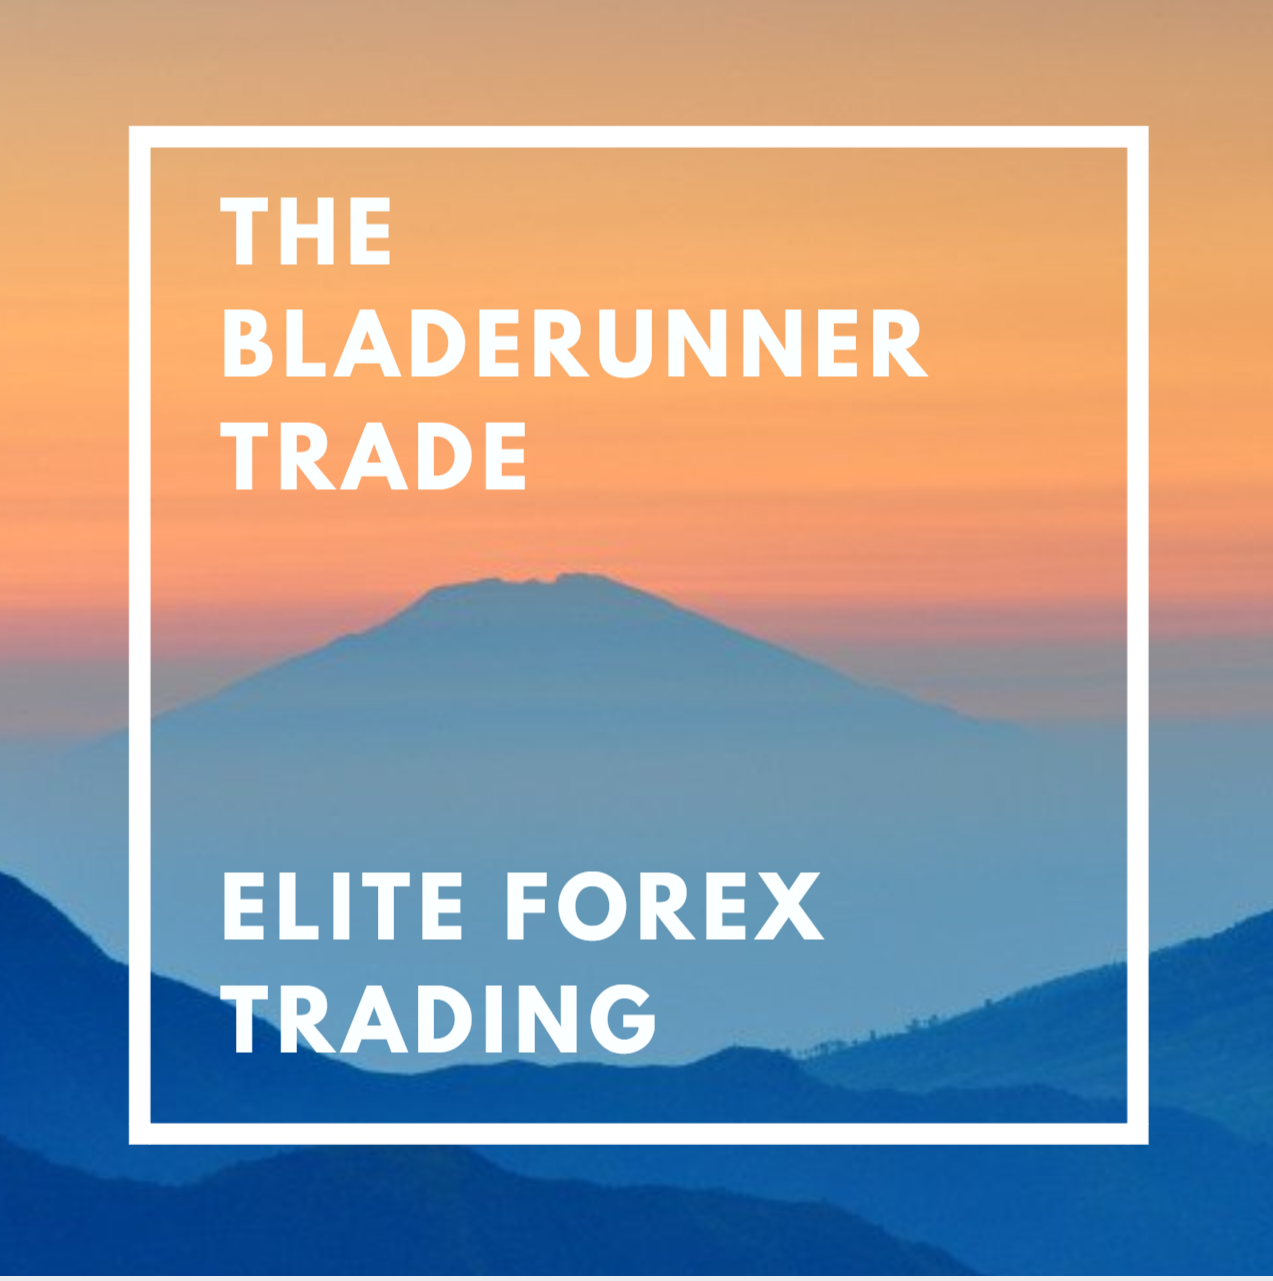 Bladerunner trade forex